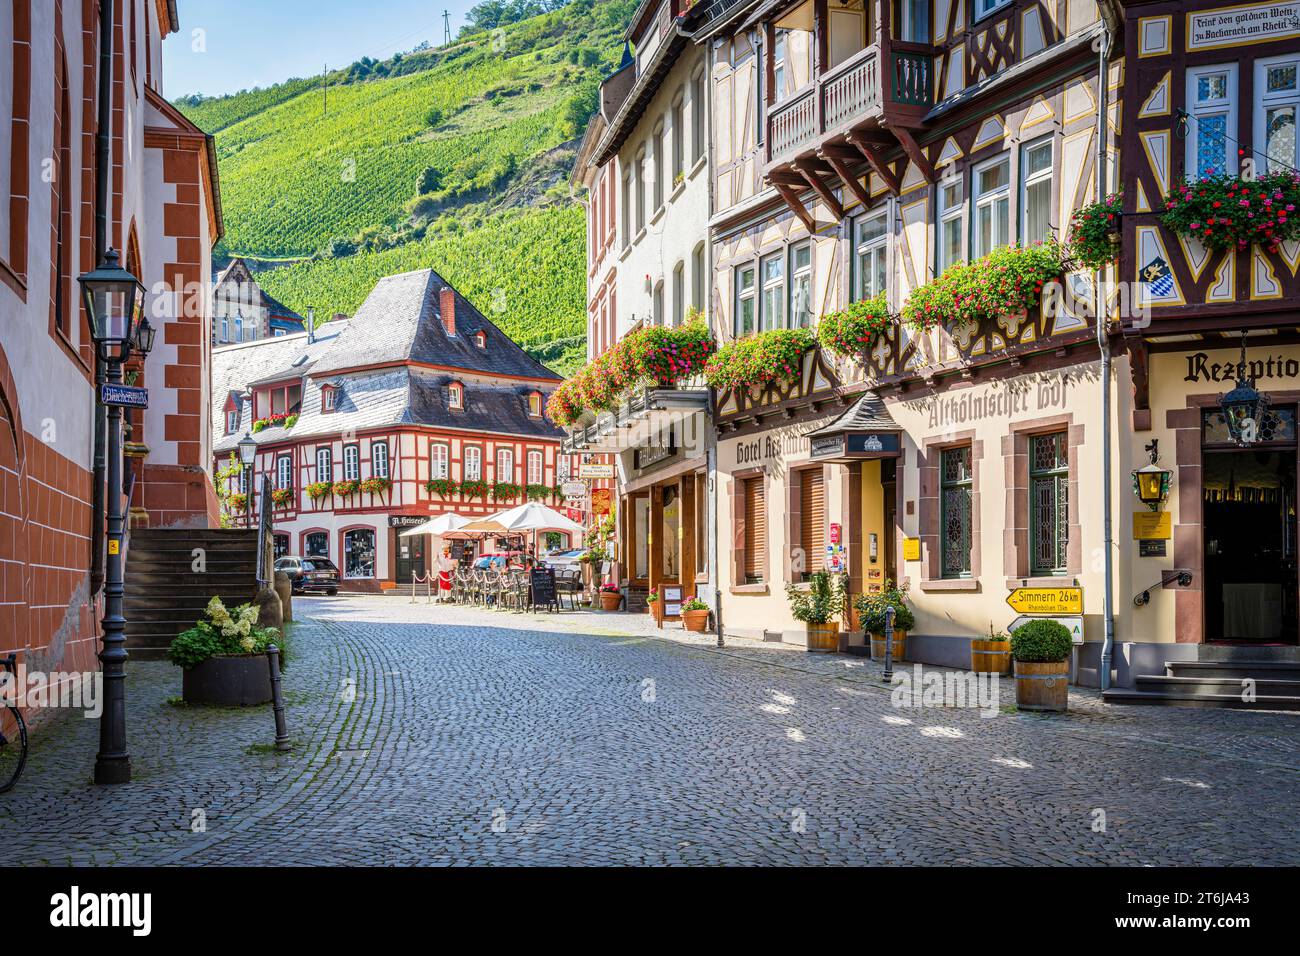 Ville de Bacharach sur le Rhin moyen, route de Steeg, bordée de maisons historiques à colombages, cafés de rue et hôtels Banque D'Images